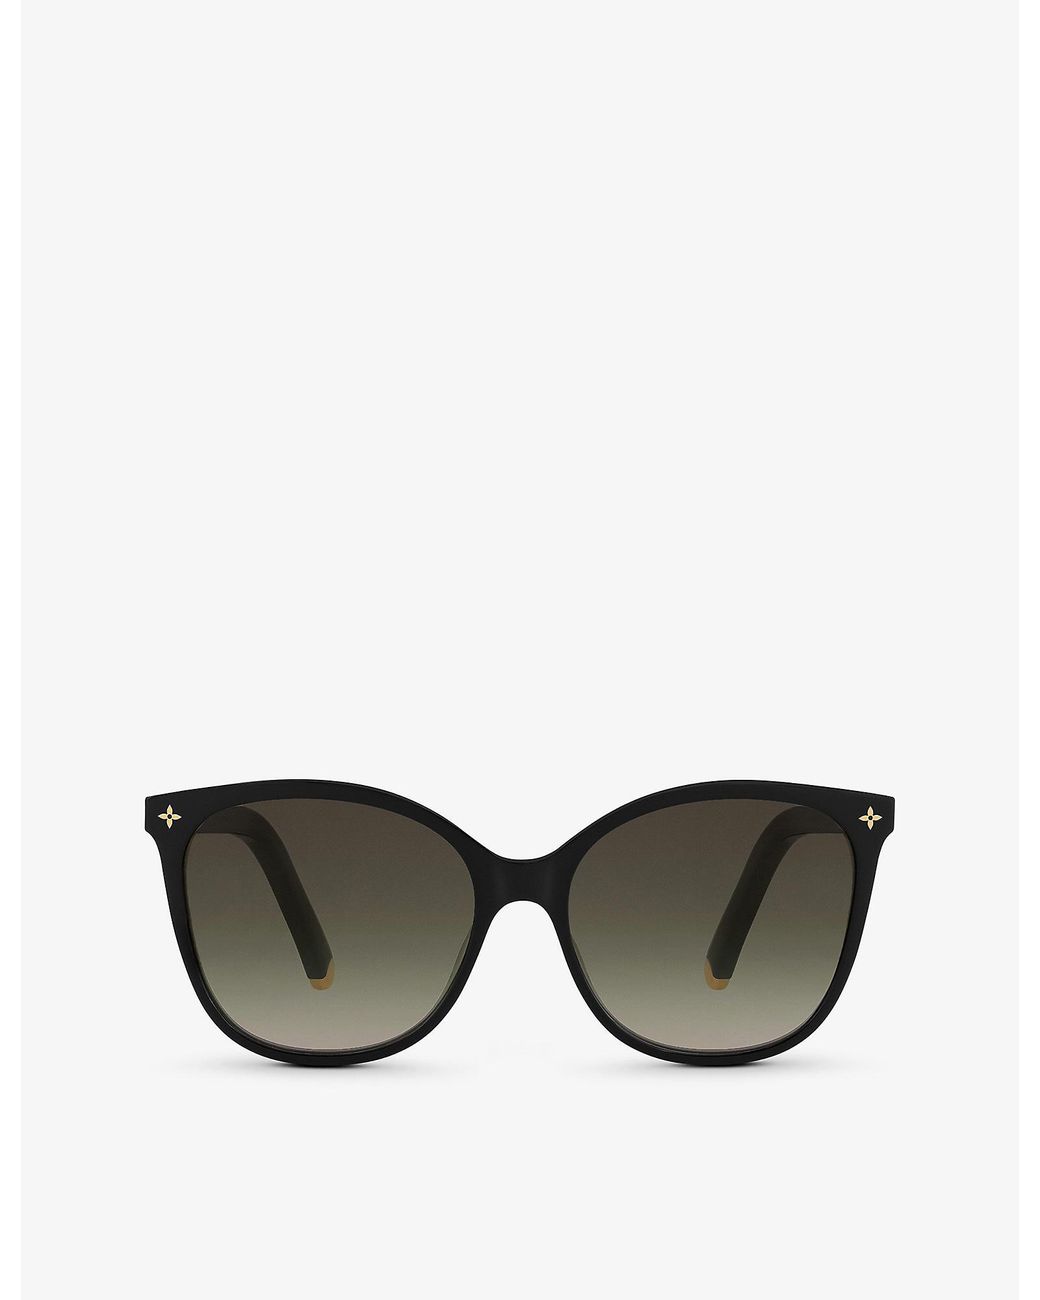 monogram sunglasses louis